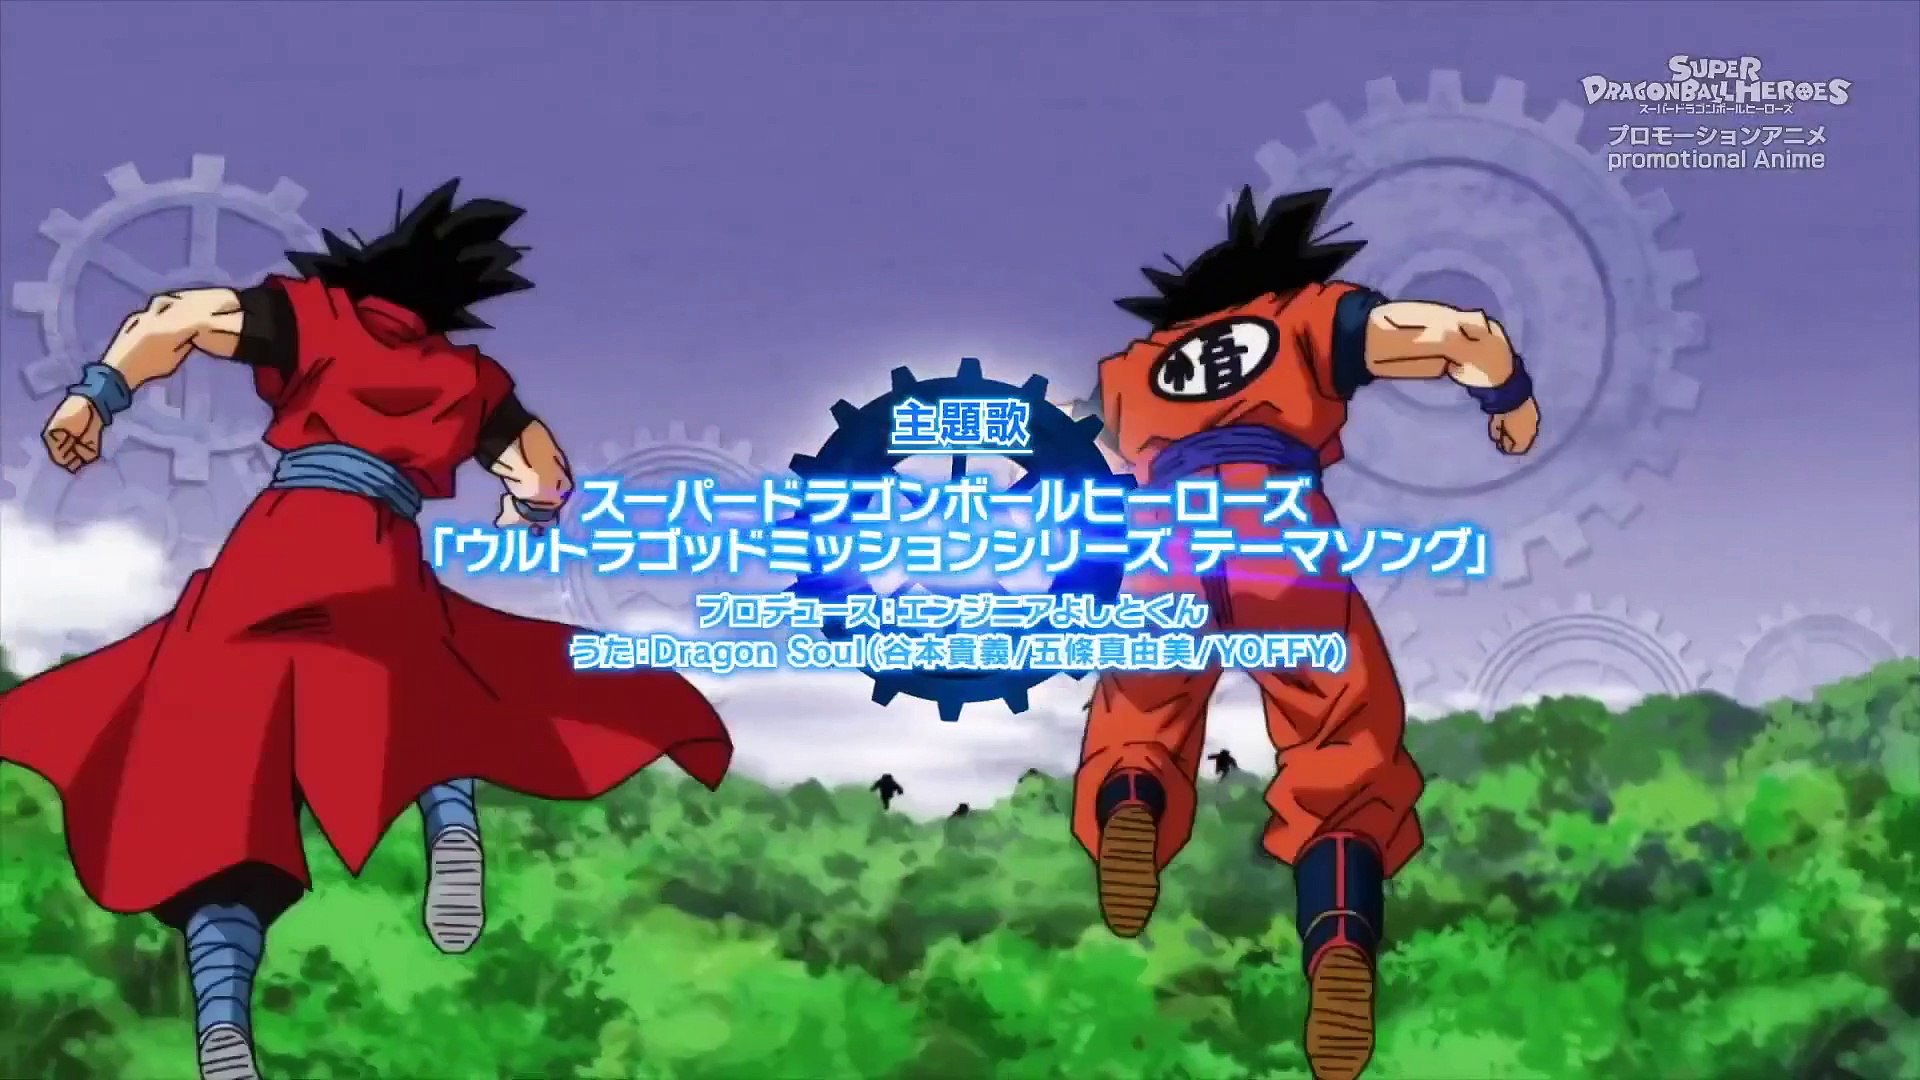 Super Saiyan God Trunks Engages! Dragon Ball Heroes Ultra God Mission  Episode 2 